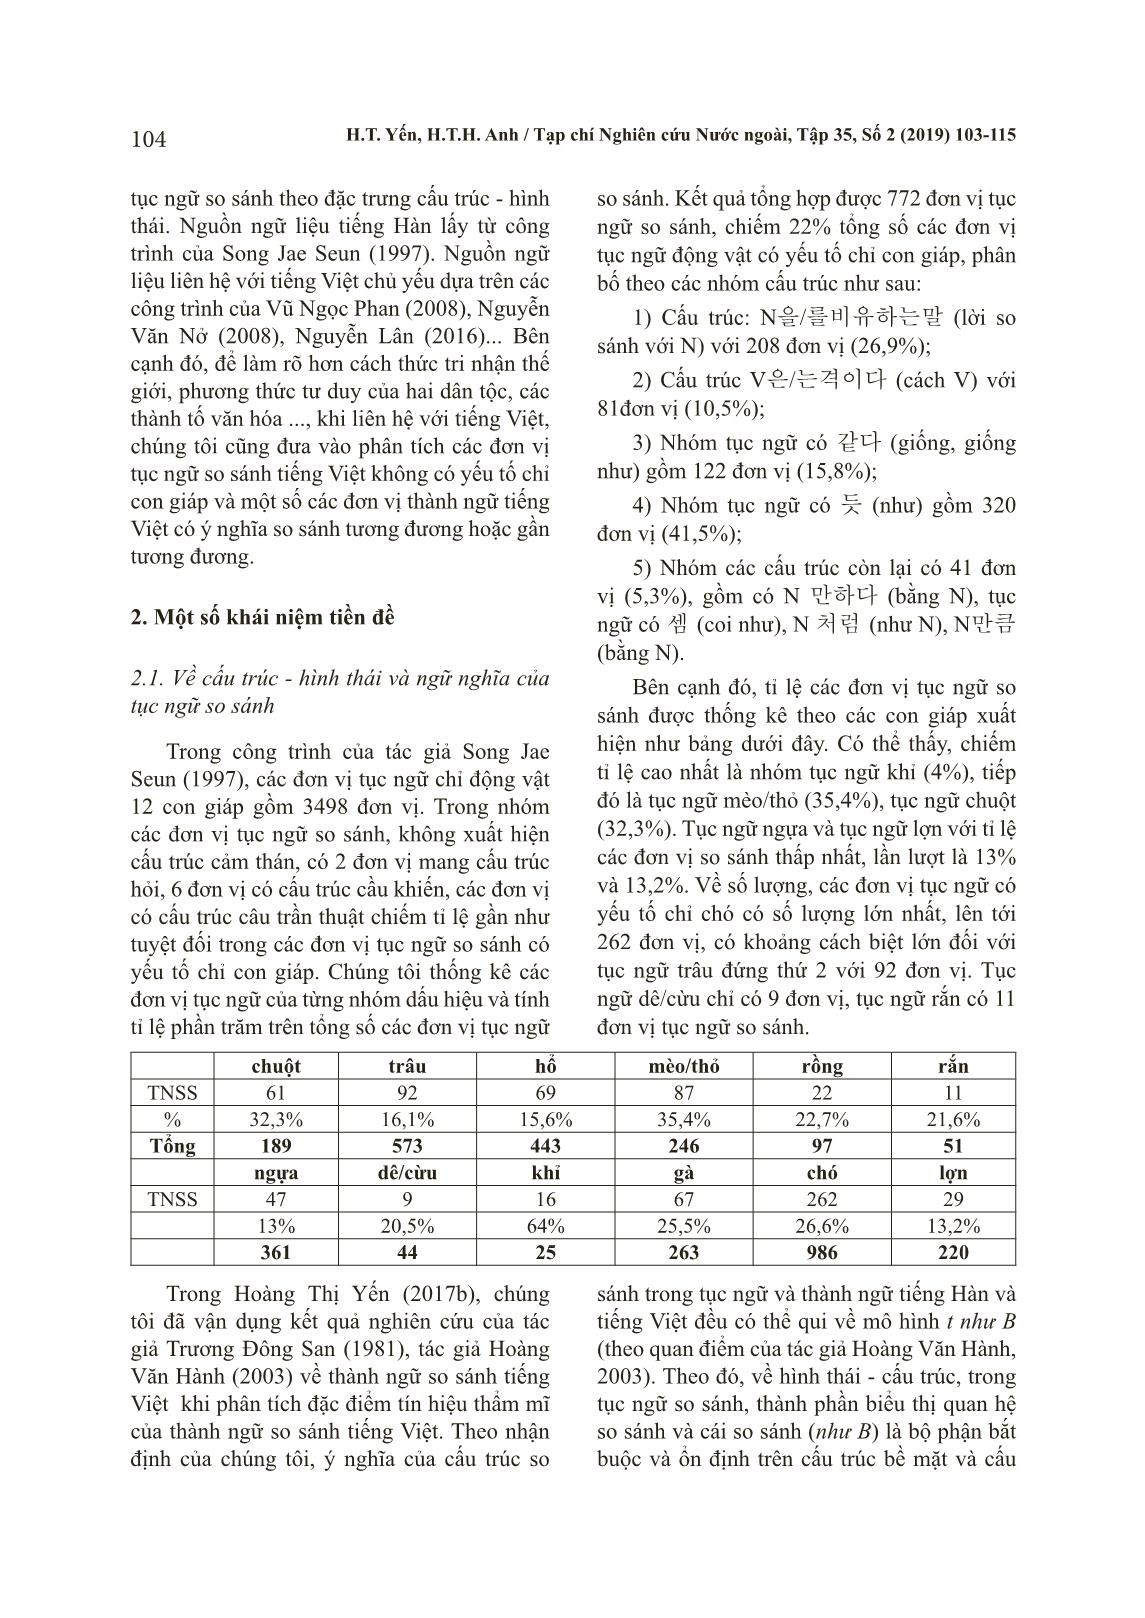 Đặc trưng tín hiệu thẩm mĩ của tục ngữ so sánh tiếng Hàn có yếu tố chỉ con giáp trang 2